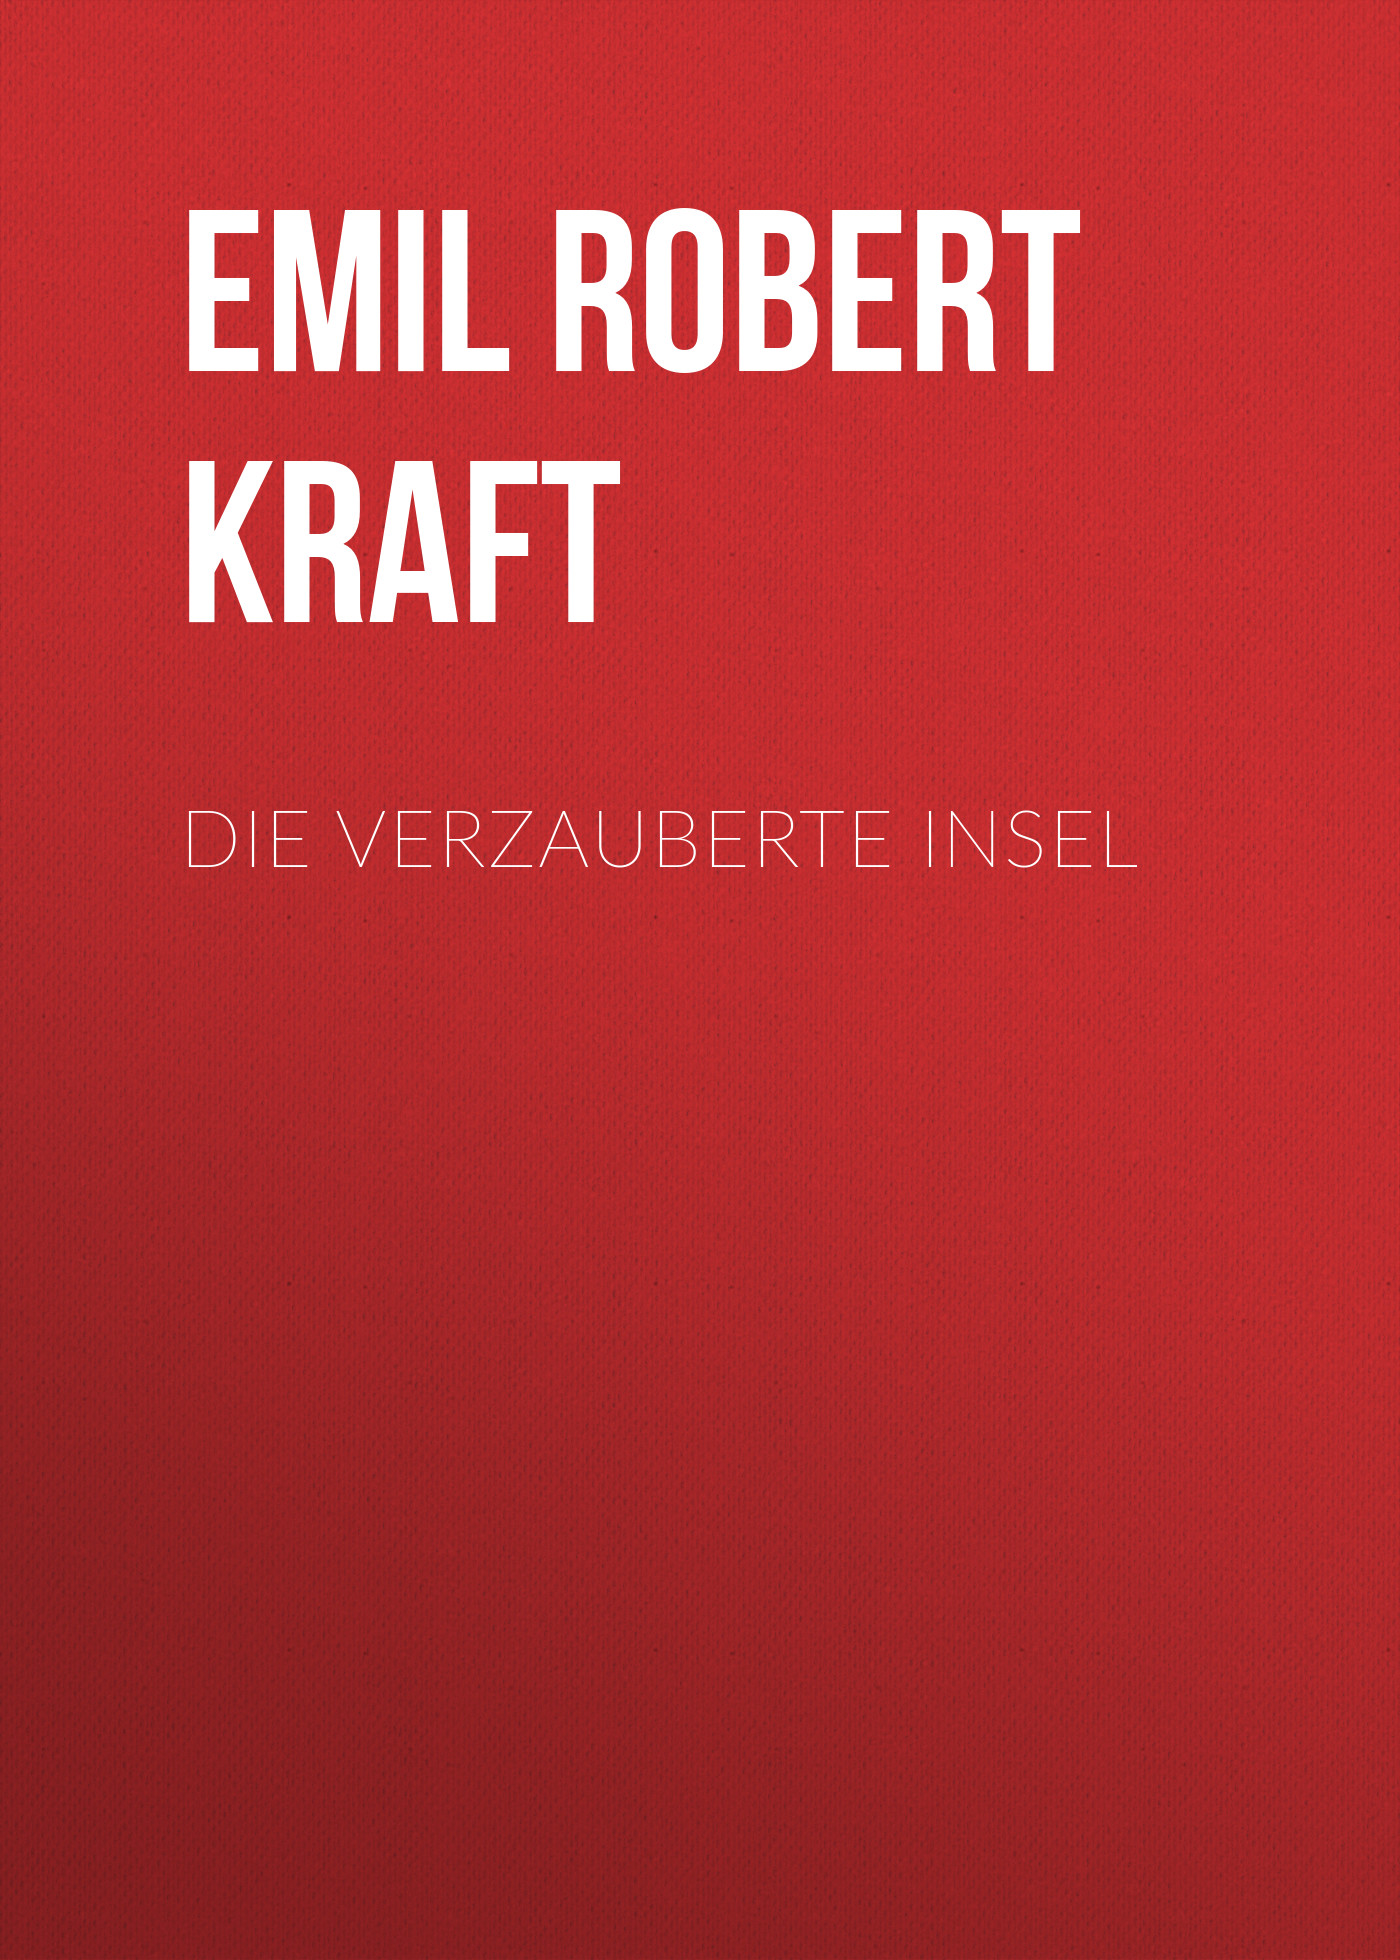 Книга Die verzauberte Insel из серии , созданная Emil Robert Kraft, может относится к жанру Зарубежная классика. Стоимость электронной книги Die verzauberte Insel с идентификатором 48633204 составляет 0 руб.